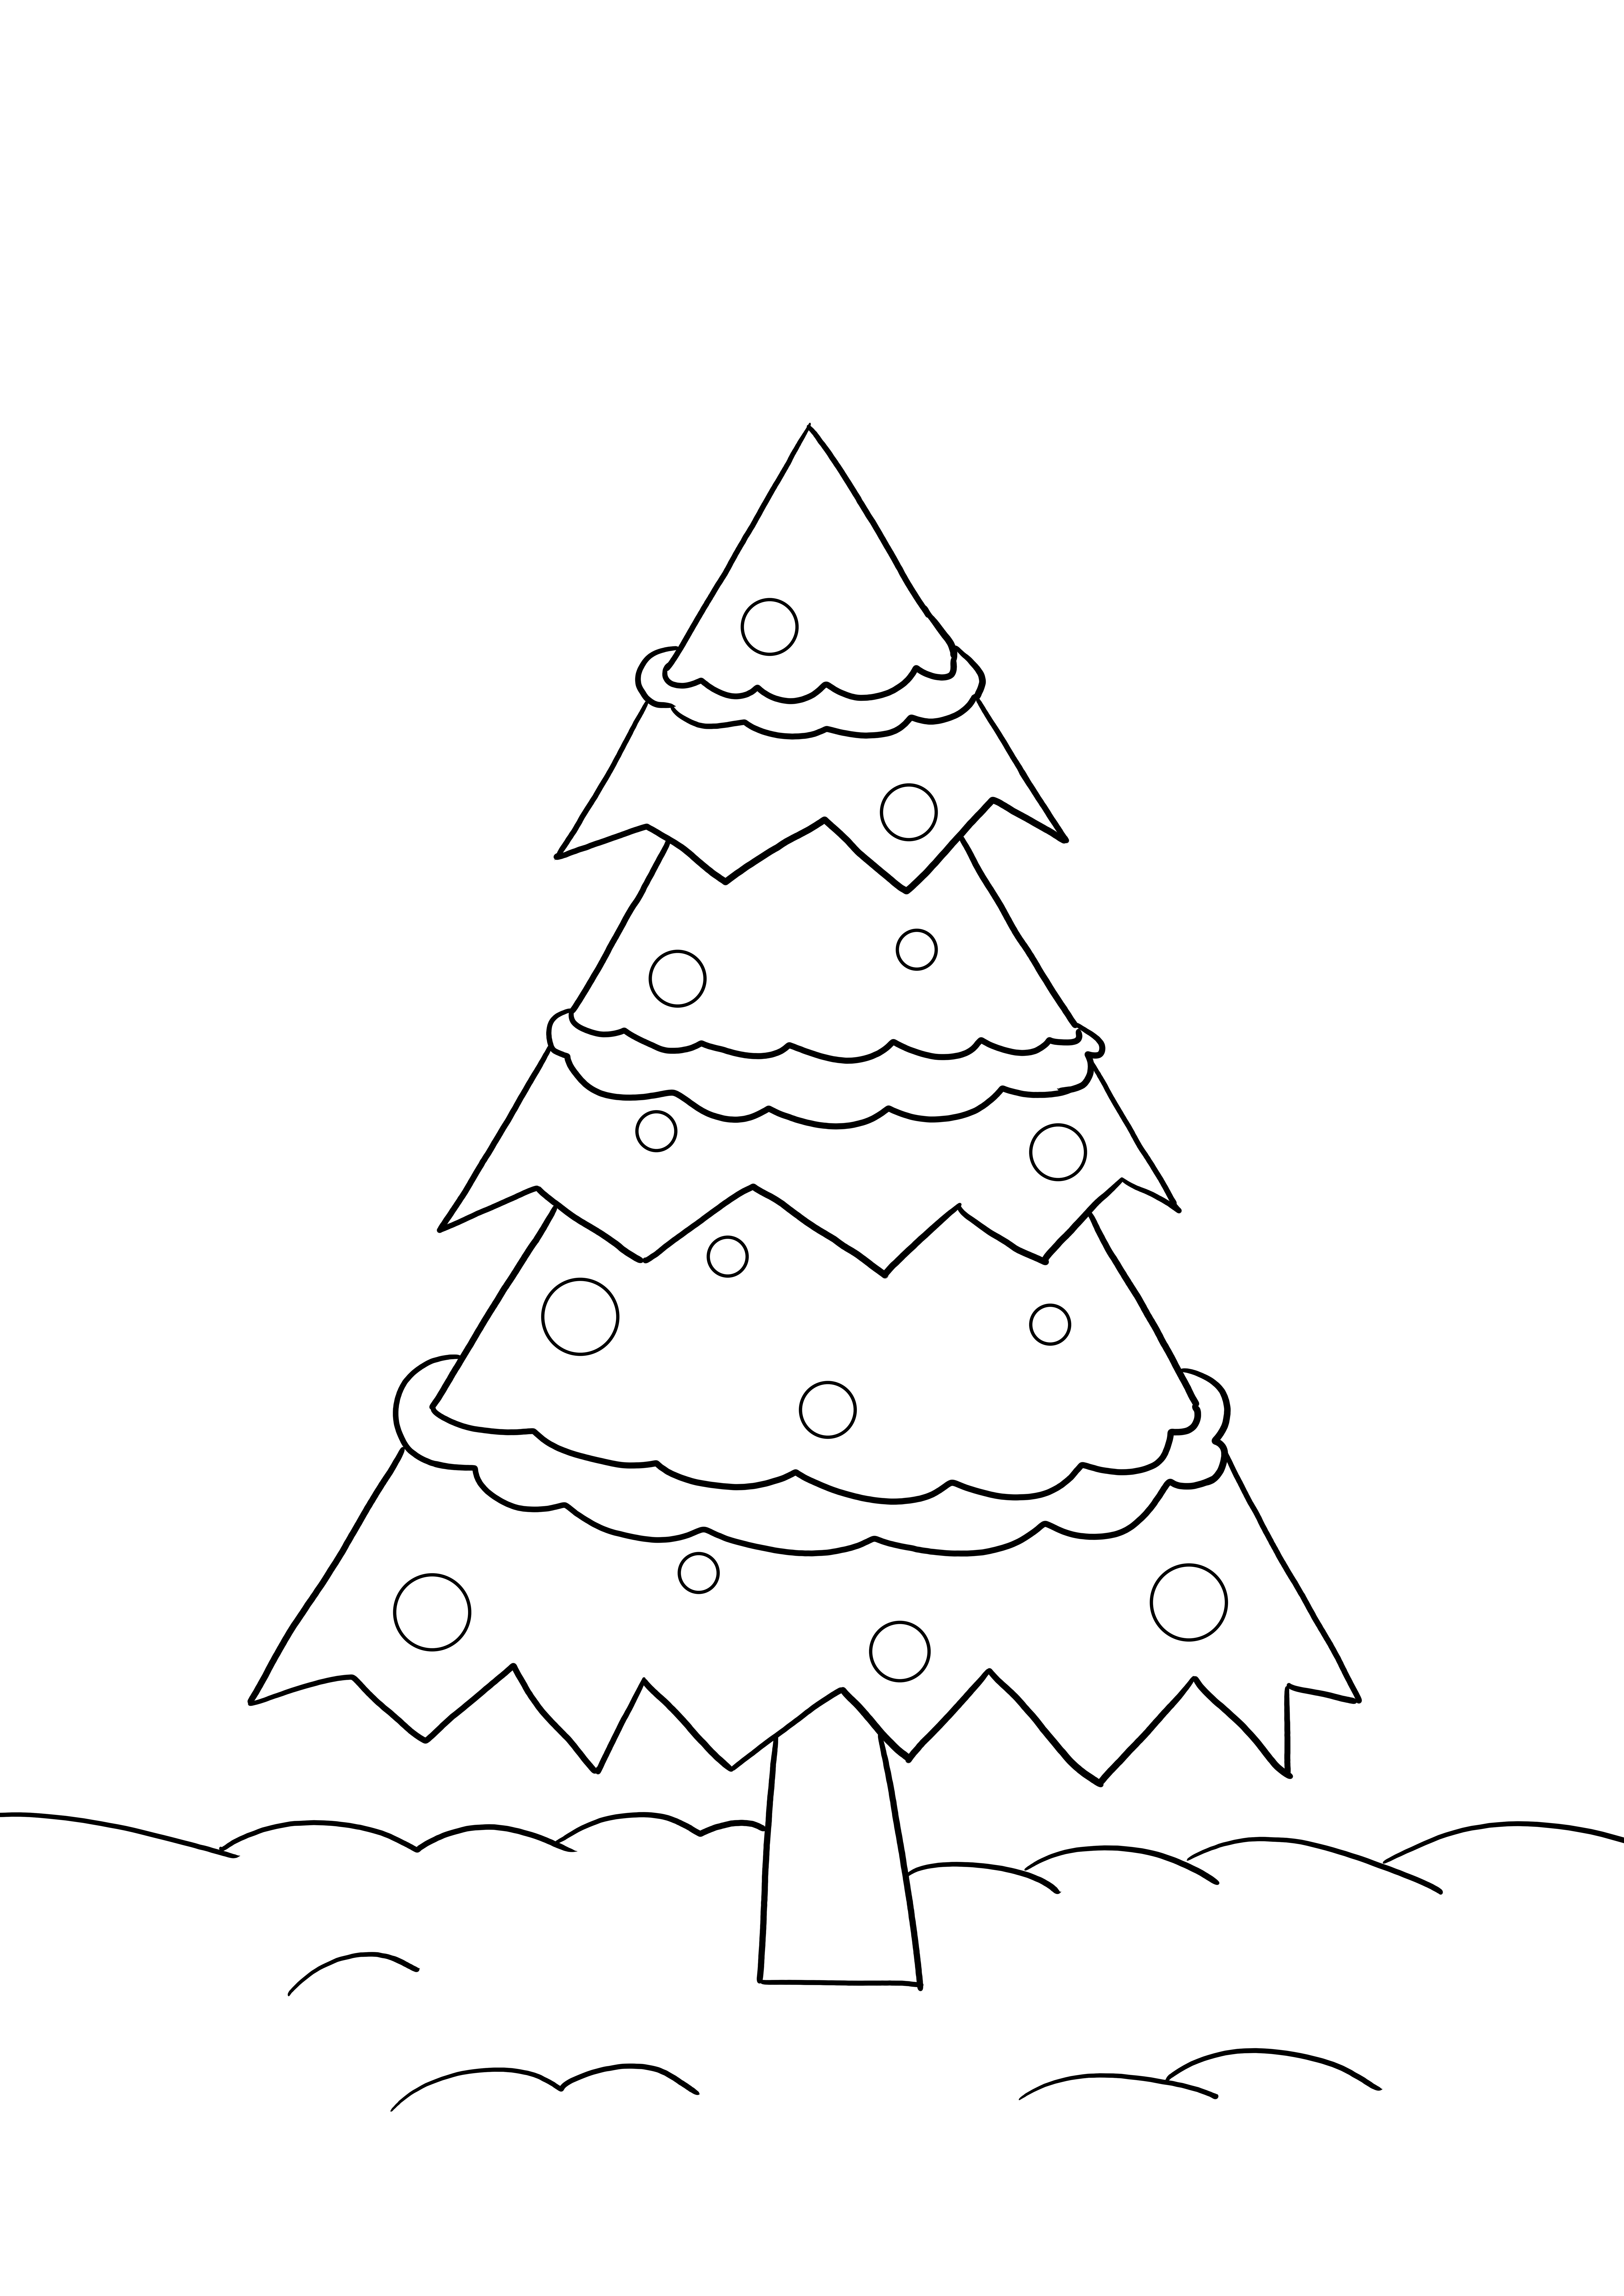 Fișă simplă de colorat Pomul de Crăciun pentru imprimare sau salvare gratuită